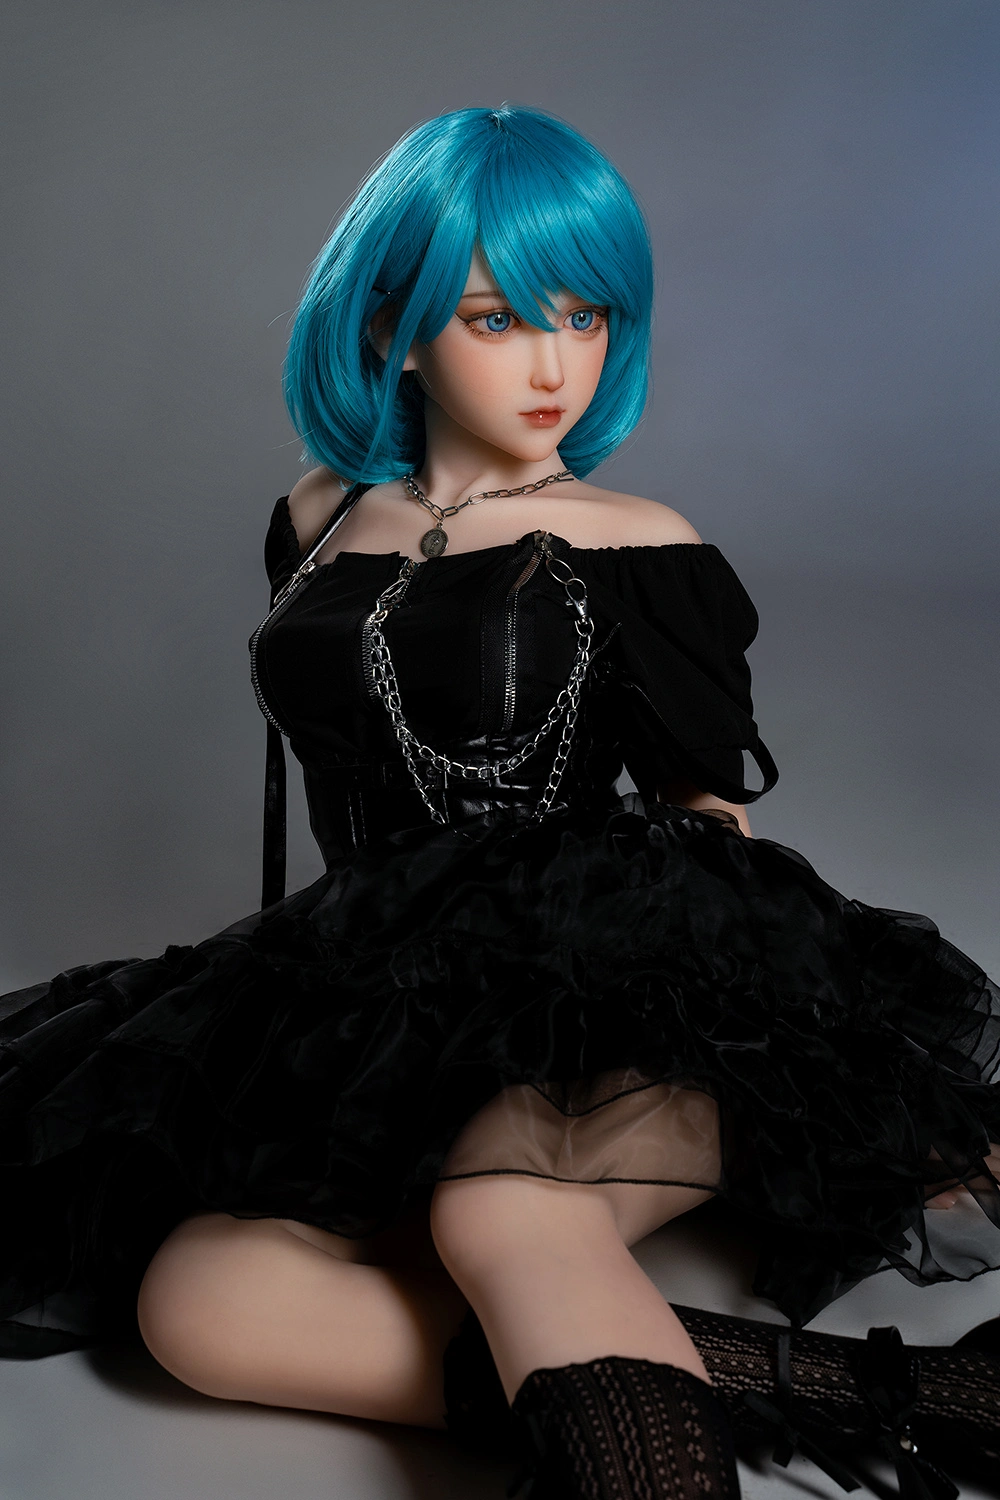 Blue hair pure sex doll